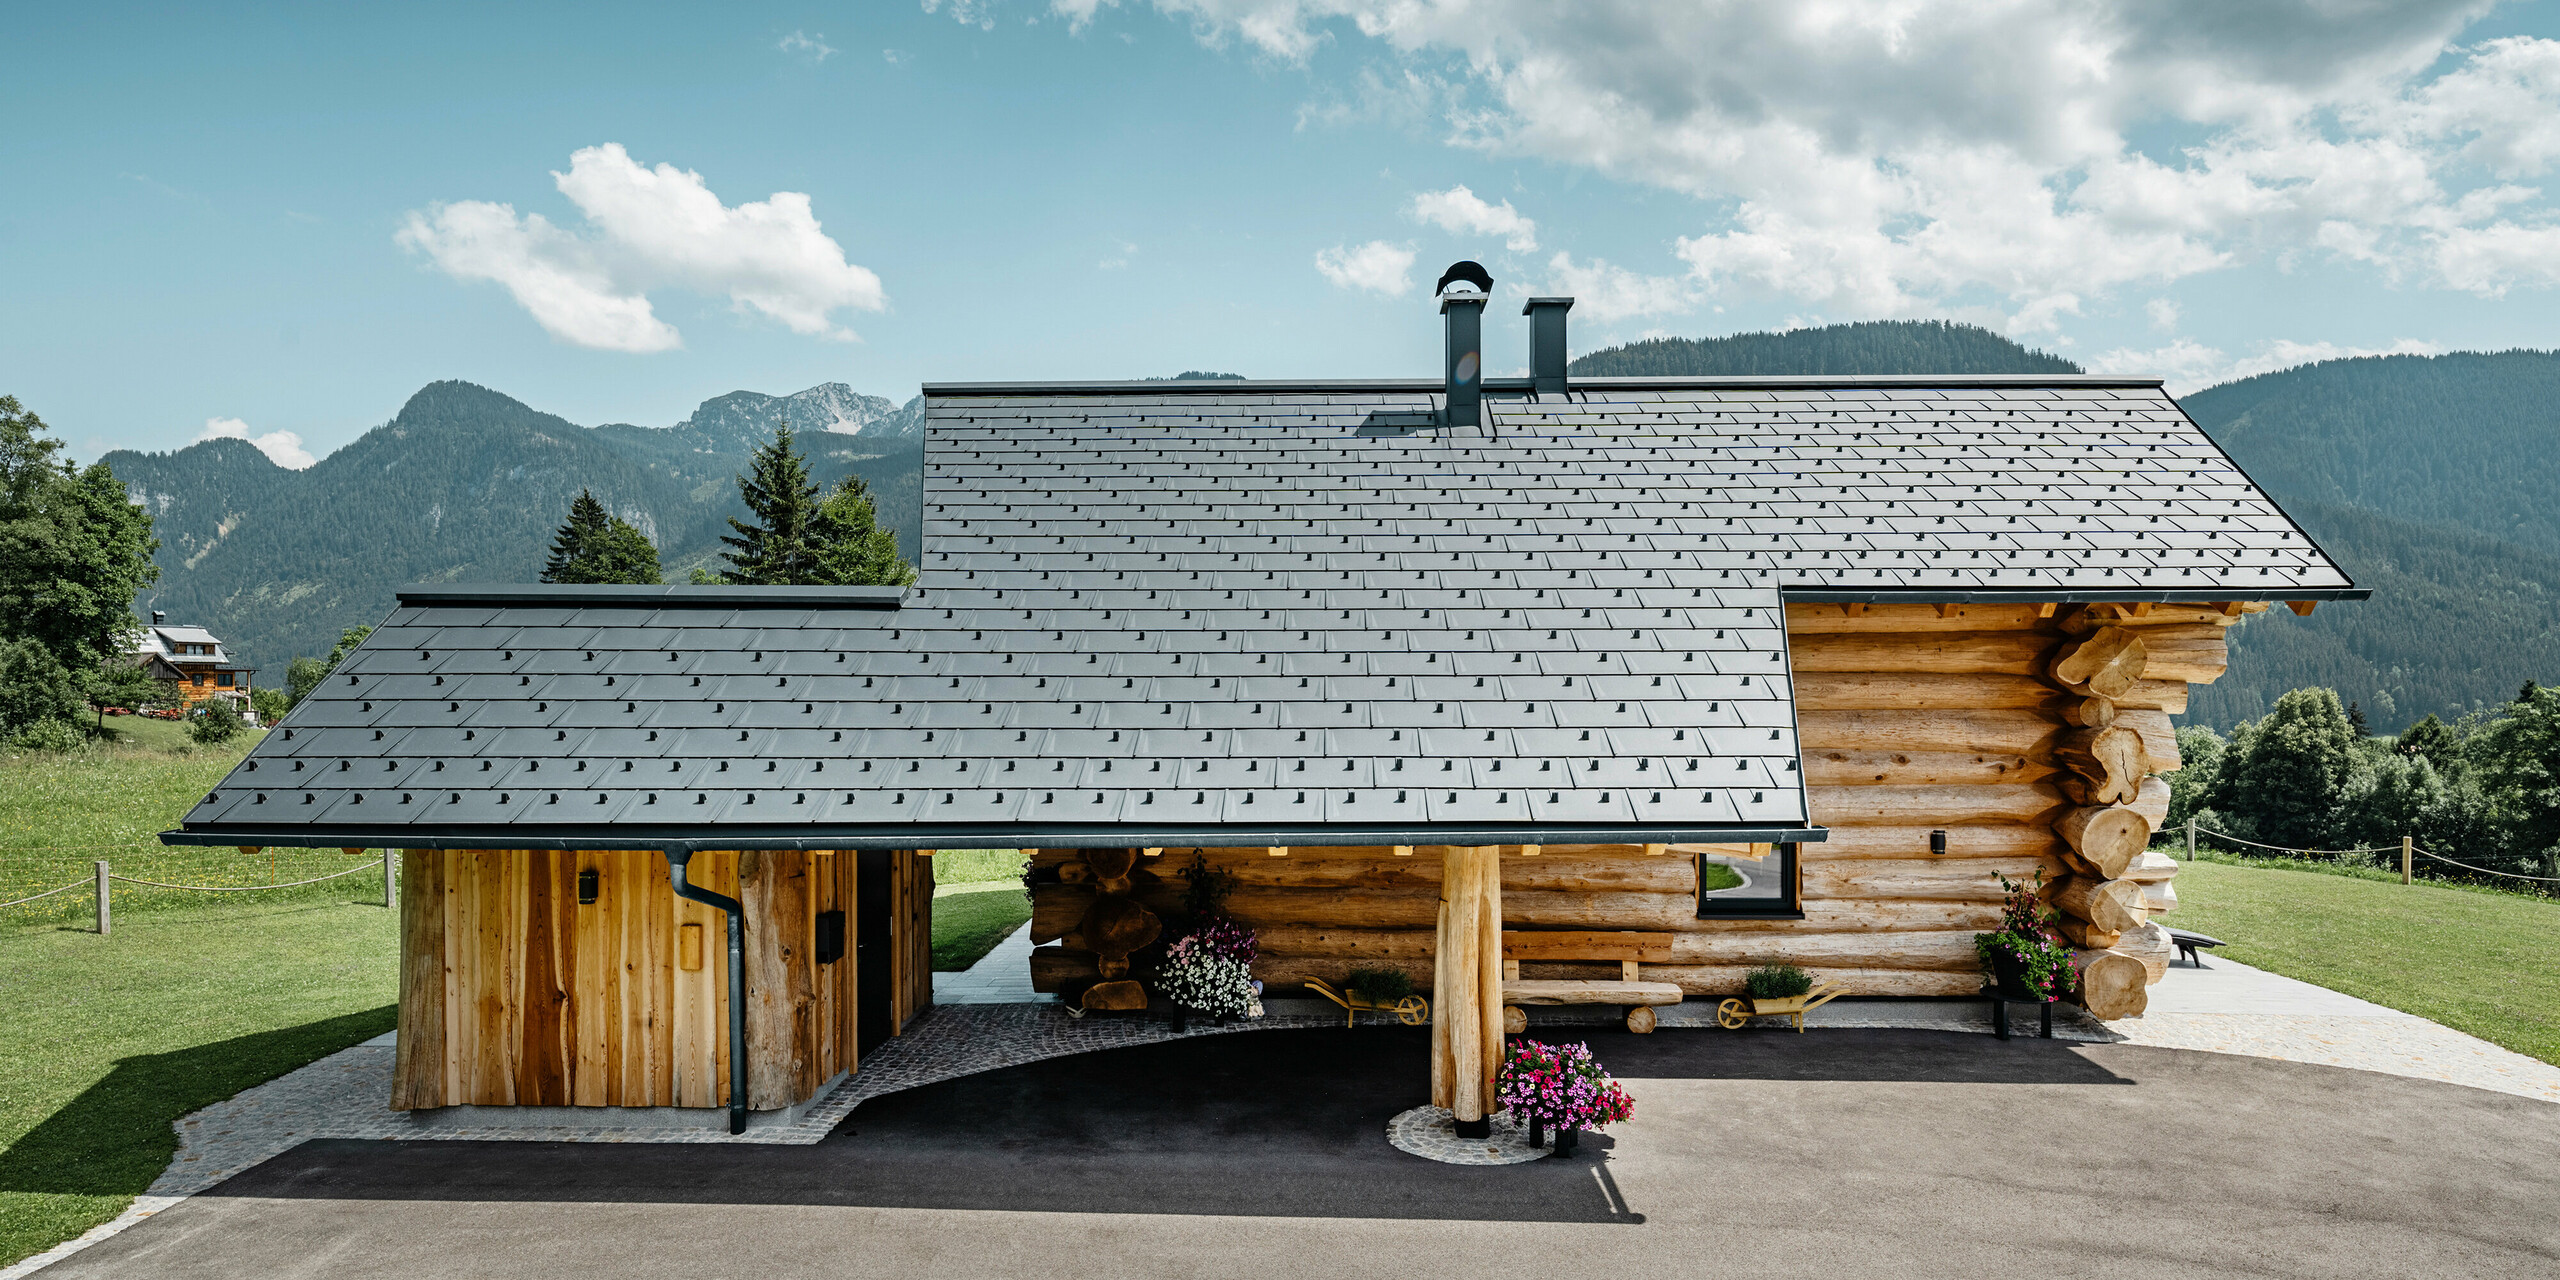 Boční pohled na příjemný srub v rakouském Gosau, vyznačující se robustní hliníkovou střechou PREFA se střešními panely R.16 v barvě P.10 antracitové. Na obrázku je harmonické spojení tradiční blokové výstavby s moderními, vysoce kvalitními střešními krytinami, které odráží dlouhou životnost a estetický design hliníkových výrobků PREFA. Dřevěný dům stojí na pozadí zvlněných zelených kopců a majestátního horského panoramatu, které podtrhuje přírodní okolí.